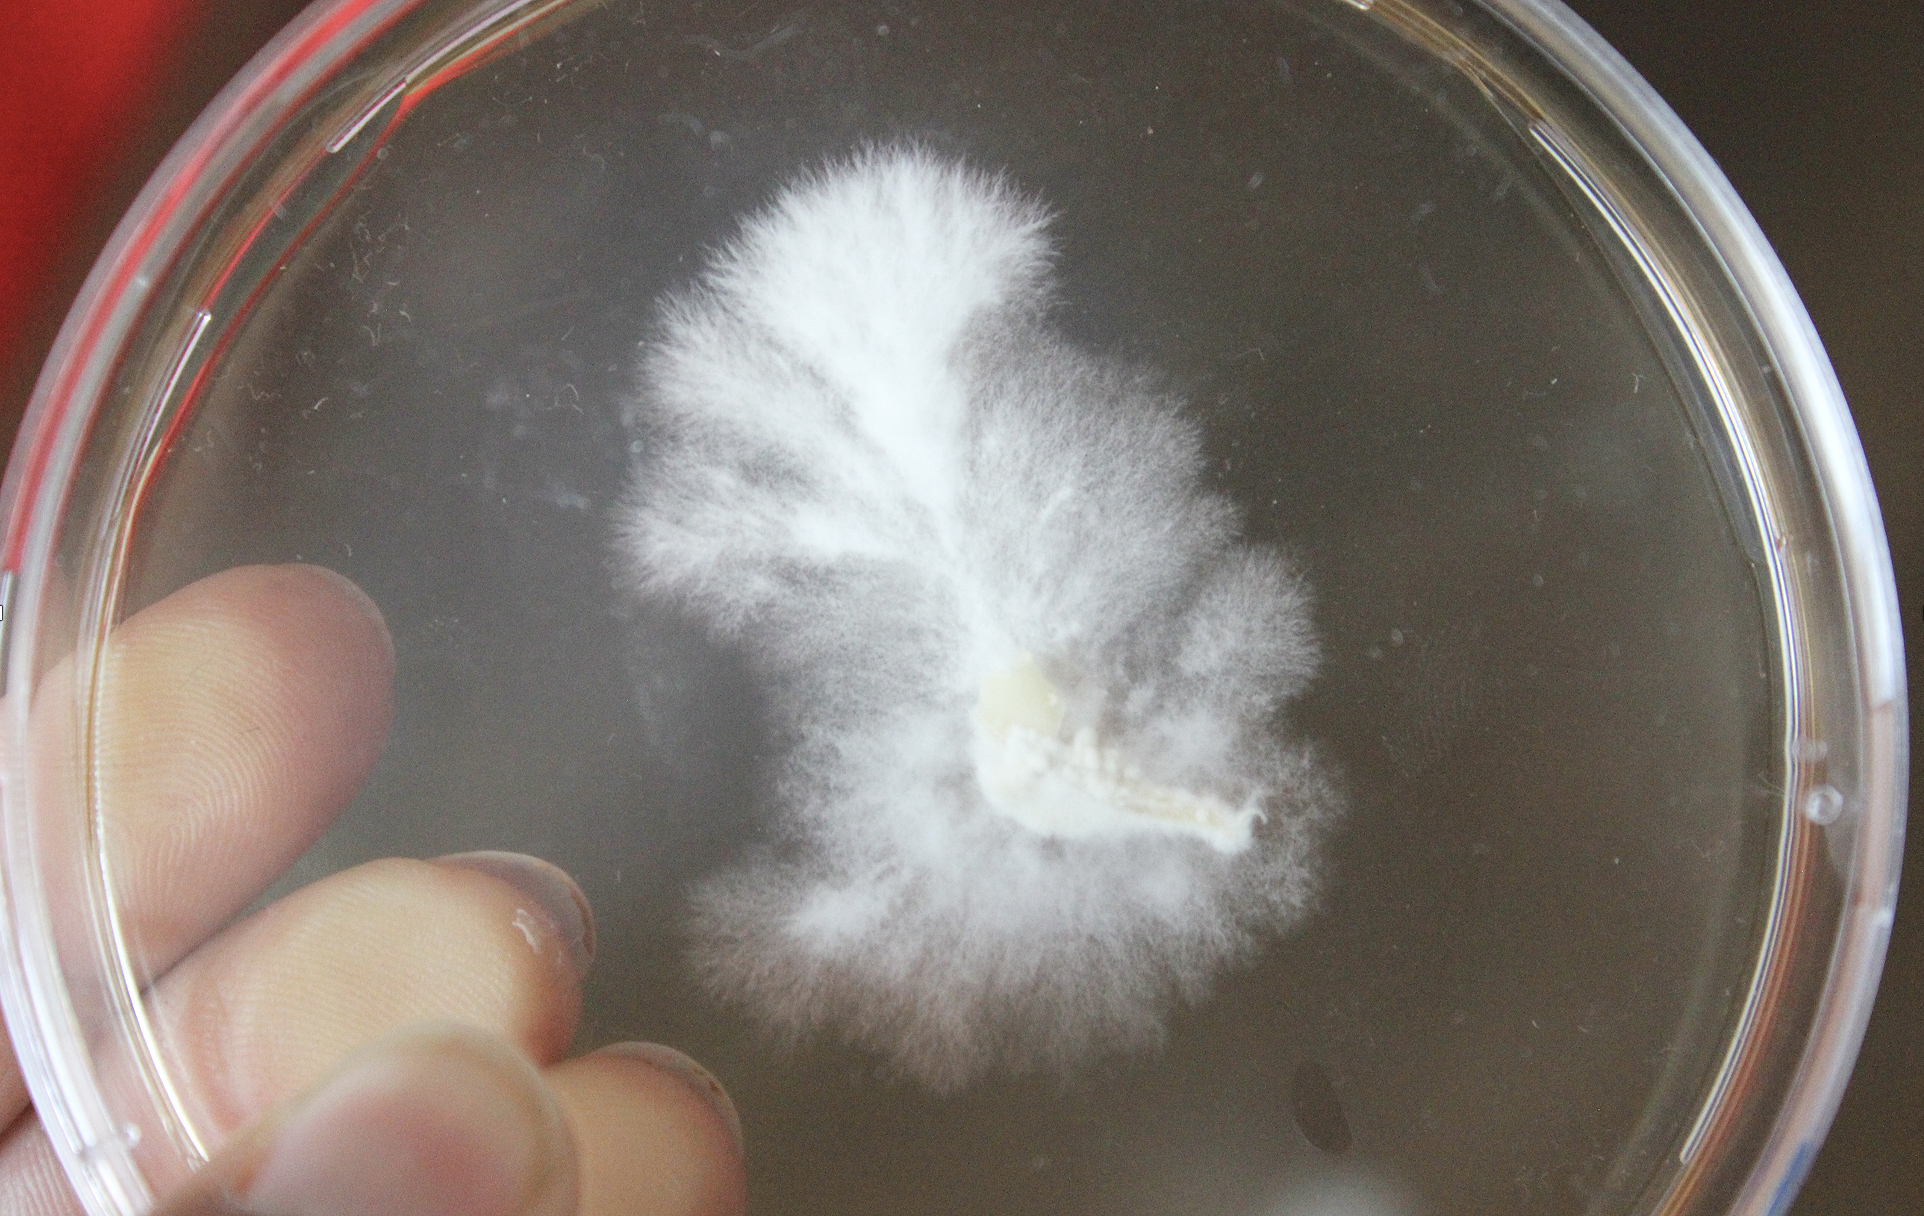 mycelium growing on an agar substrate